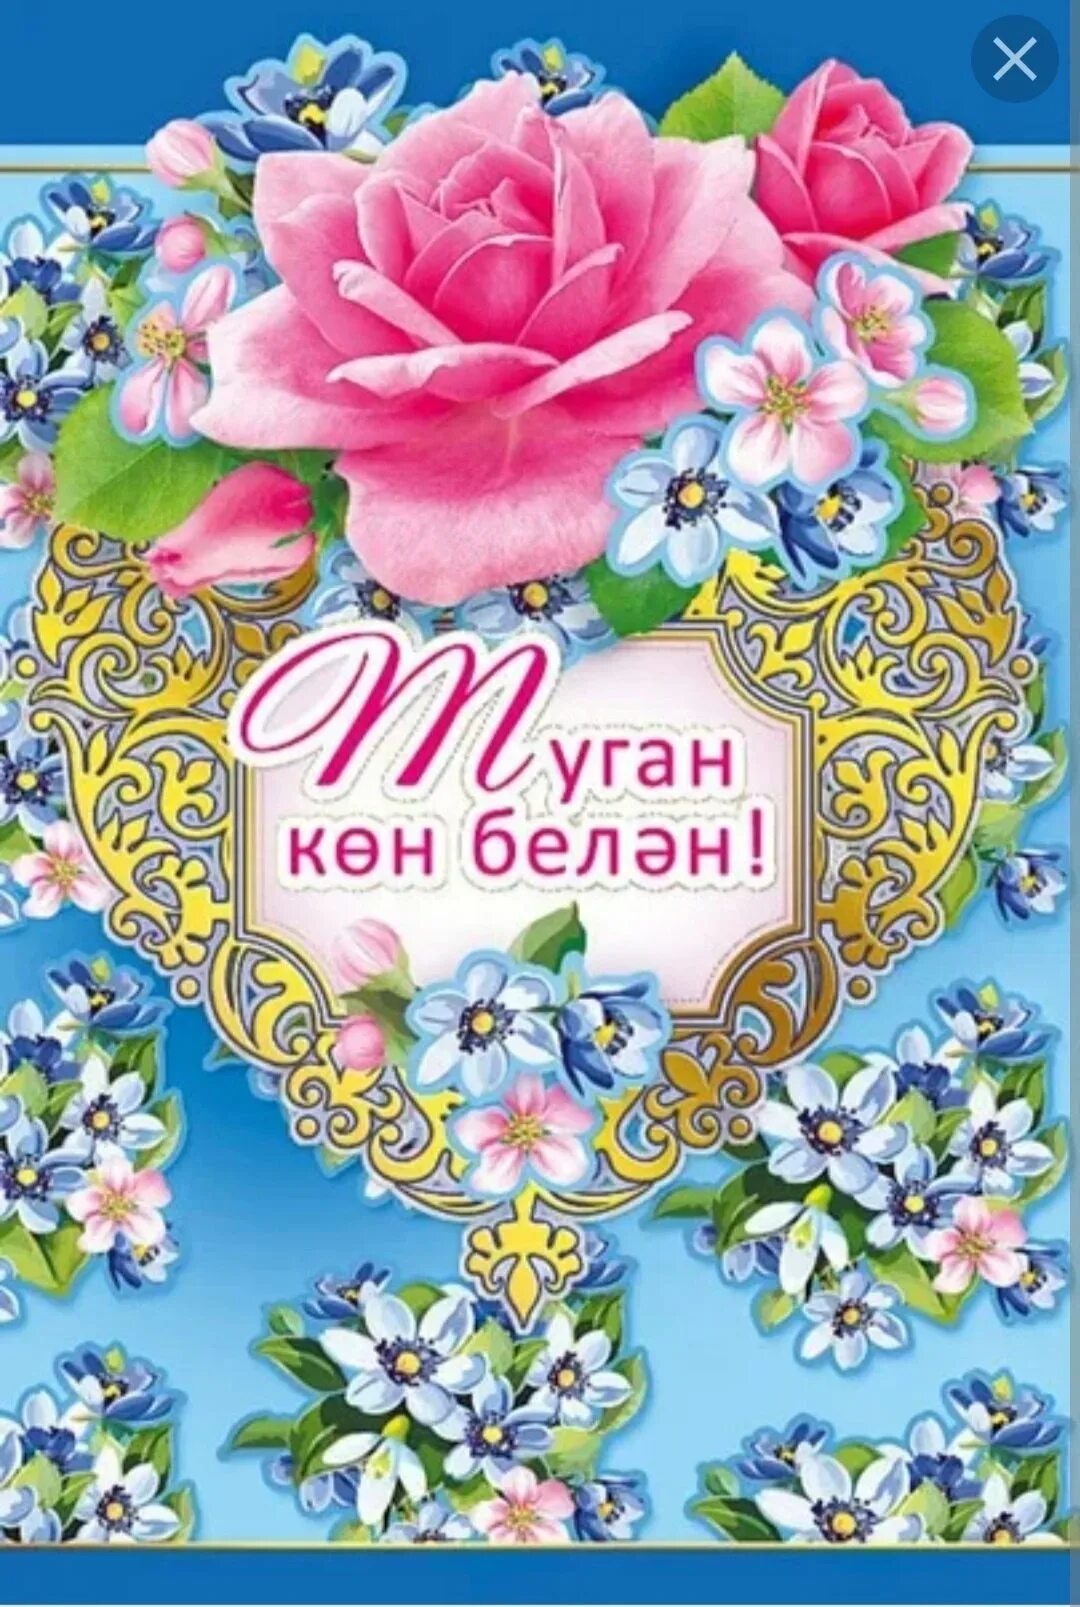 Туган юбилей белэн. С днём рождения на татарском языке. Поздравления с днём рождения на татаском. Поздравление на татарском языке. Поздравления с днём рождения на татарском.